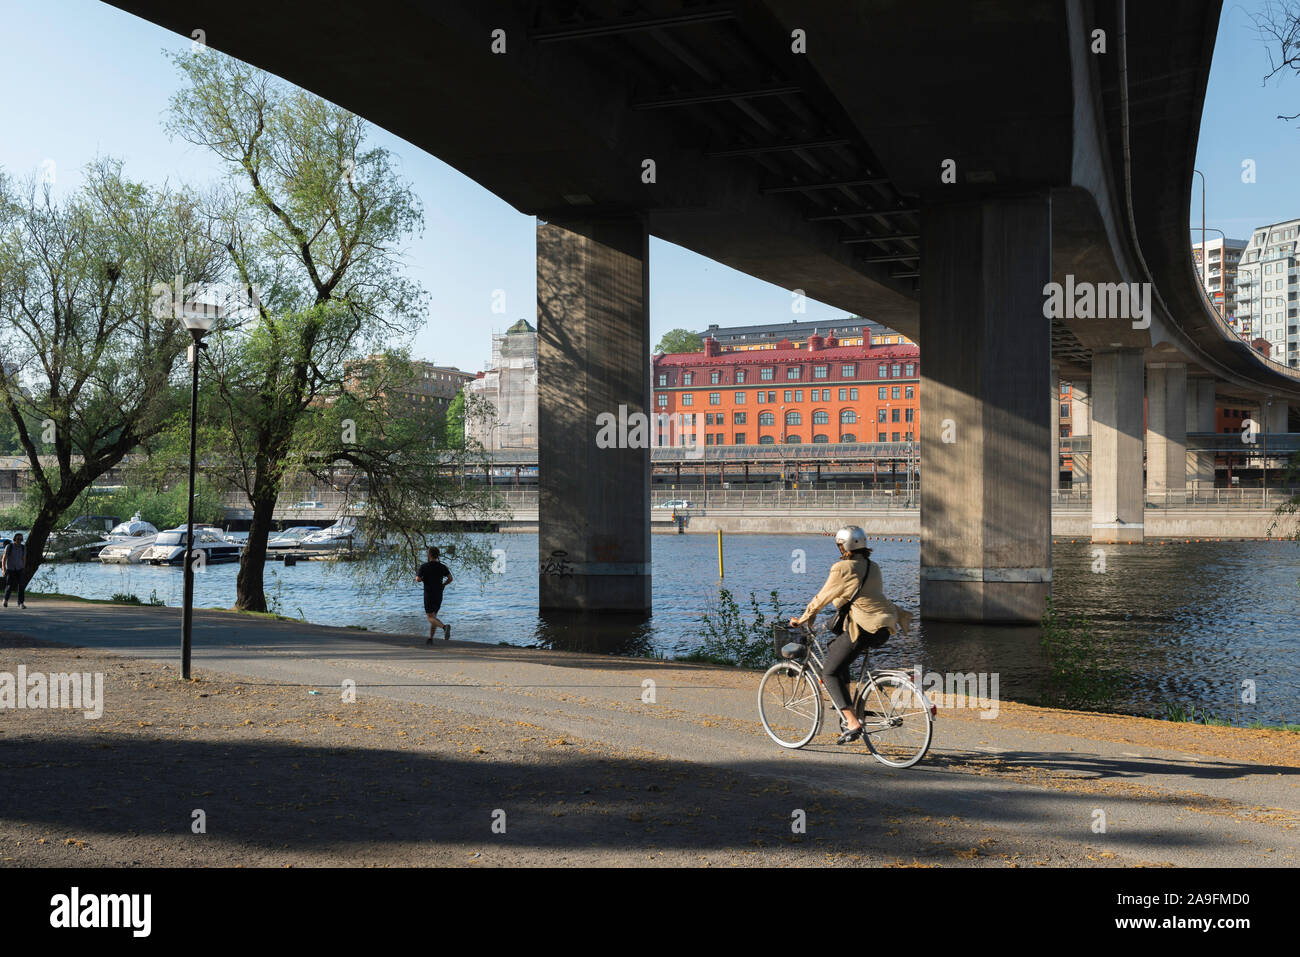 Río de la ciudad de Estocolmo, la vista de una mujer en bicicleta junto a Klara Sjö, un río estrecho que separa el Kungsholmen y Norrmalm distritos de Estocolmo, Suecia. Foto de stock